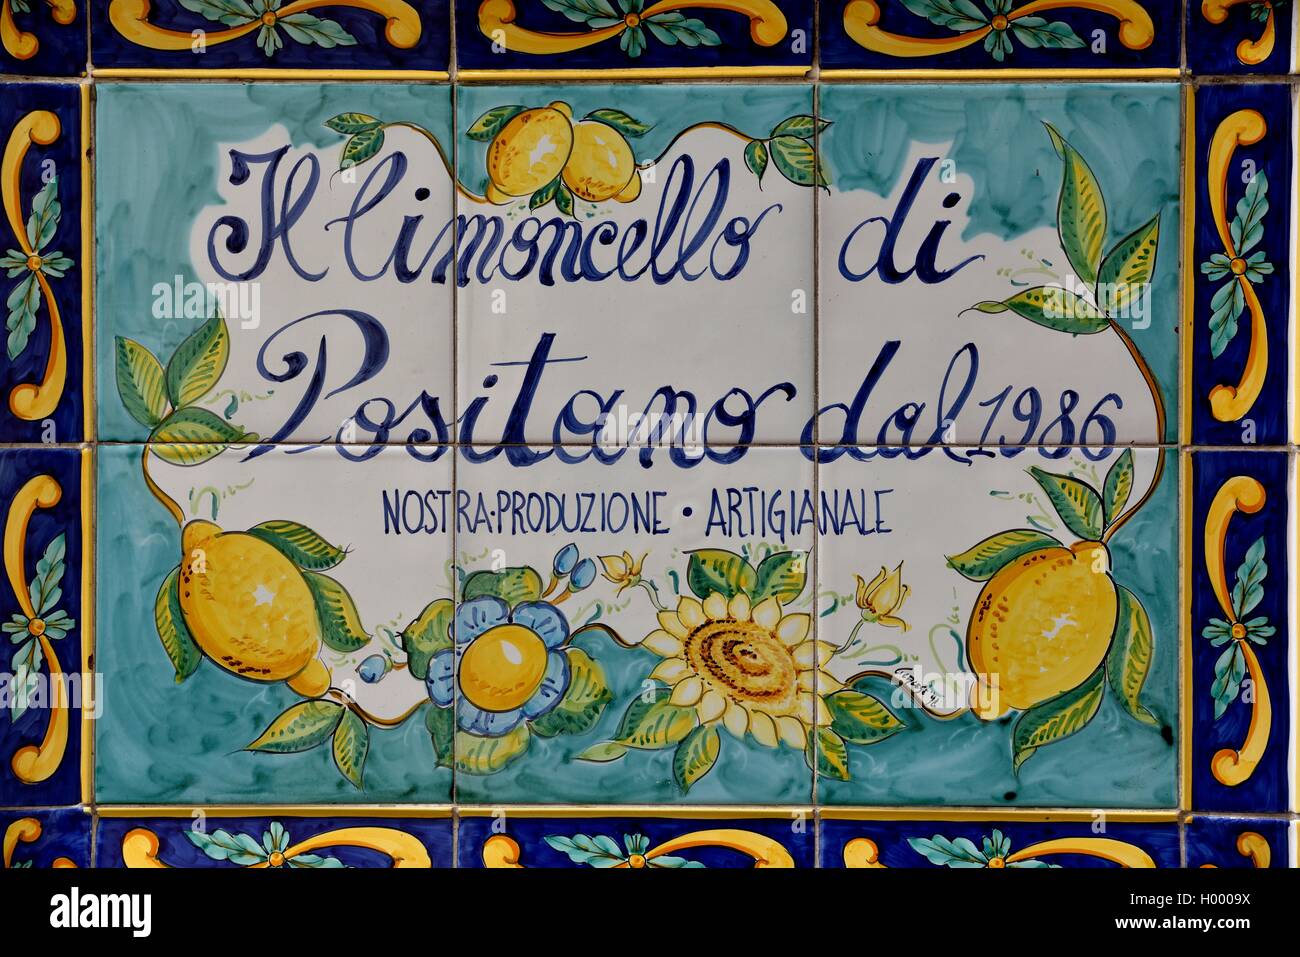 Carreaux de mur avec de la publicité pour des Limoncello, liqueur italienne faite de citrons, Positano, Amalfi Coast, Costiera Amalfitana Banque D'Images